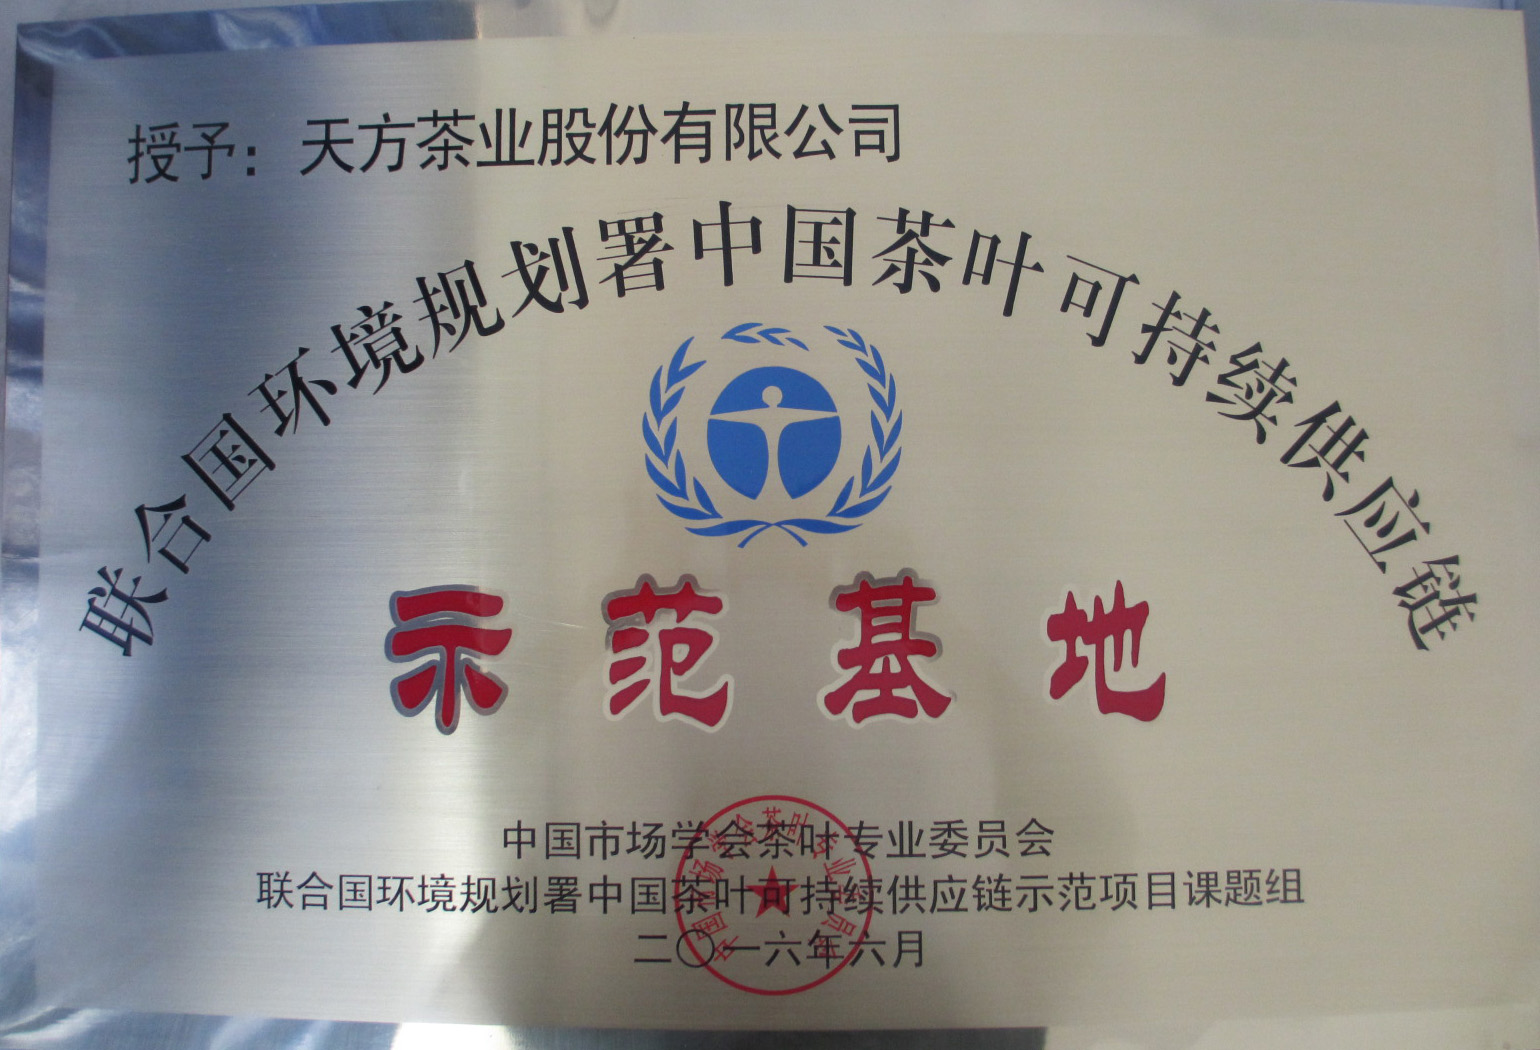 联合国环境规划署中国茶叶可持续供应链示范基地